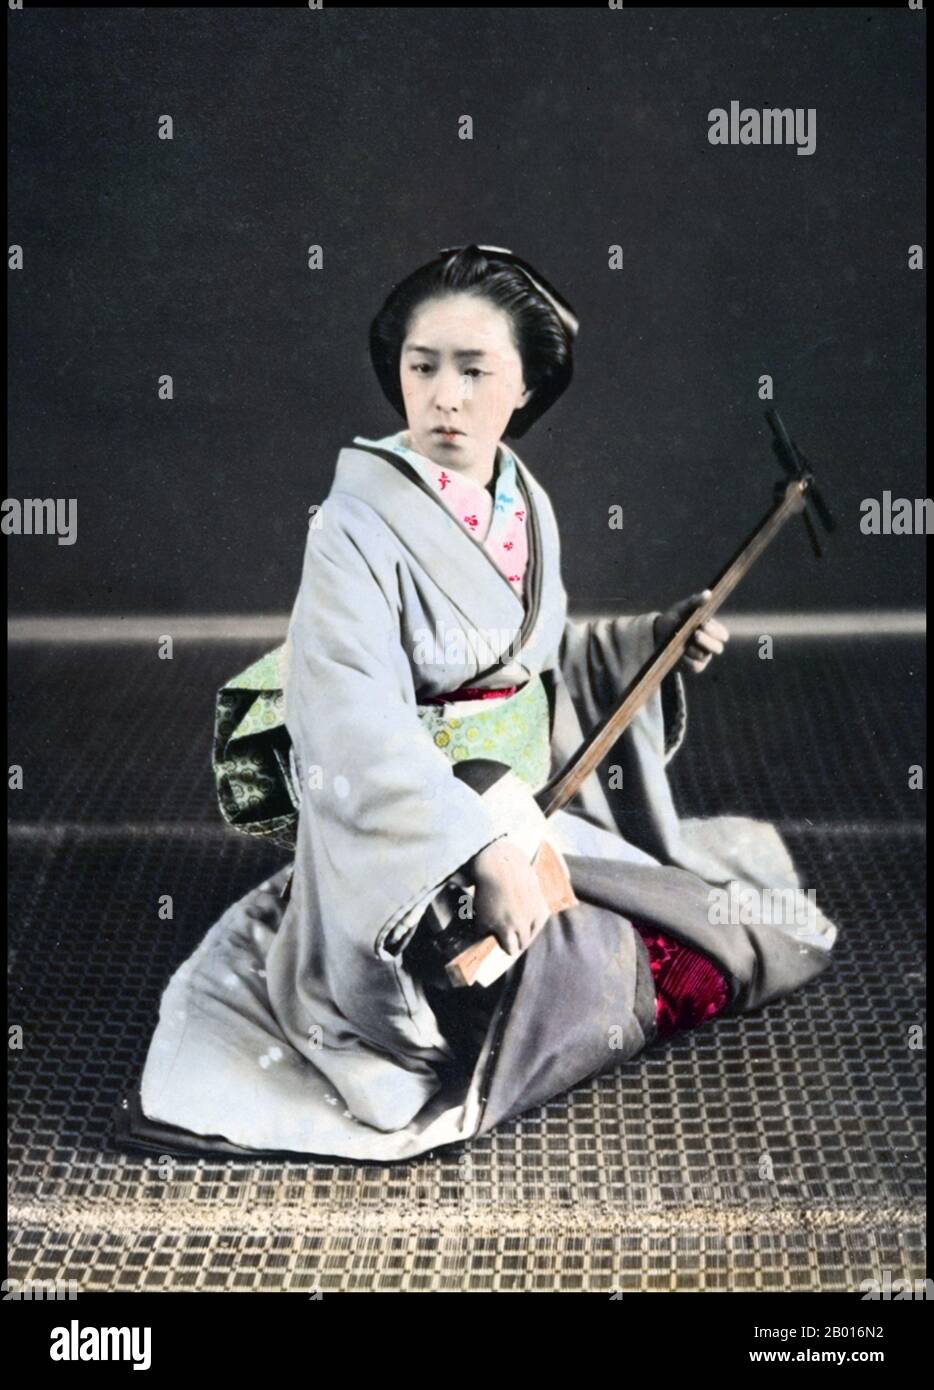 Giappone: Una geisha che suona uno sciamisen, Tokyo, c.. 1870. Geisha, Geiko o o Geigi sono animatrici giapponesi tradizionali, le cui abilità includono lo spettacolo di varie arti giapponesi come musica classica e danza. Lo shamisen o samisen (letteralmente "tre corde di sapore"), chiamato anche sangen (letteralmente "tre corde") è uno strumento musicale a tre corde suonato con un plectrum chiamato bach. Foto Stock